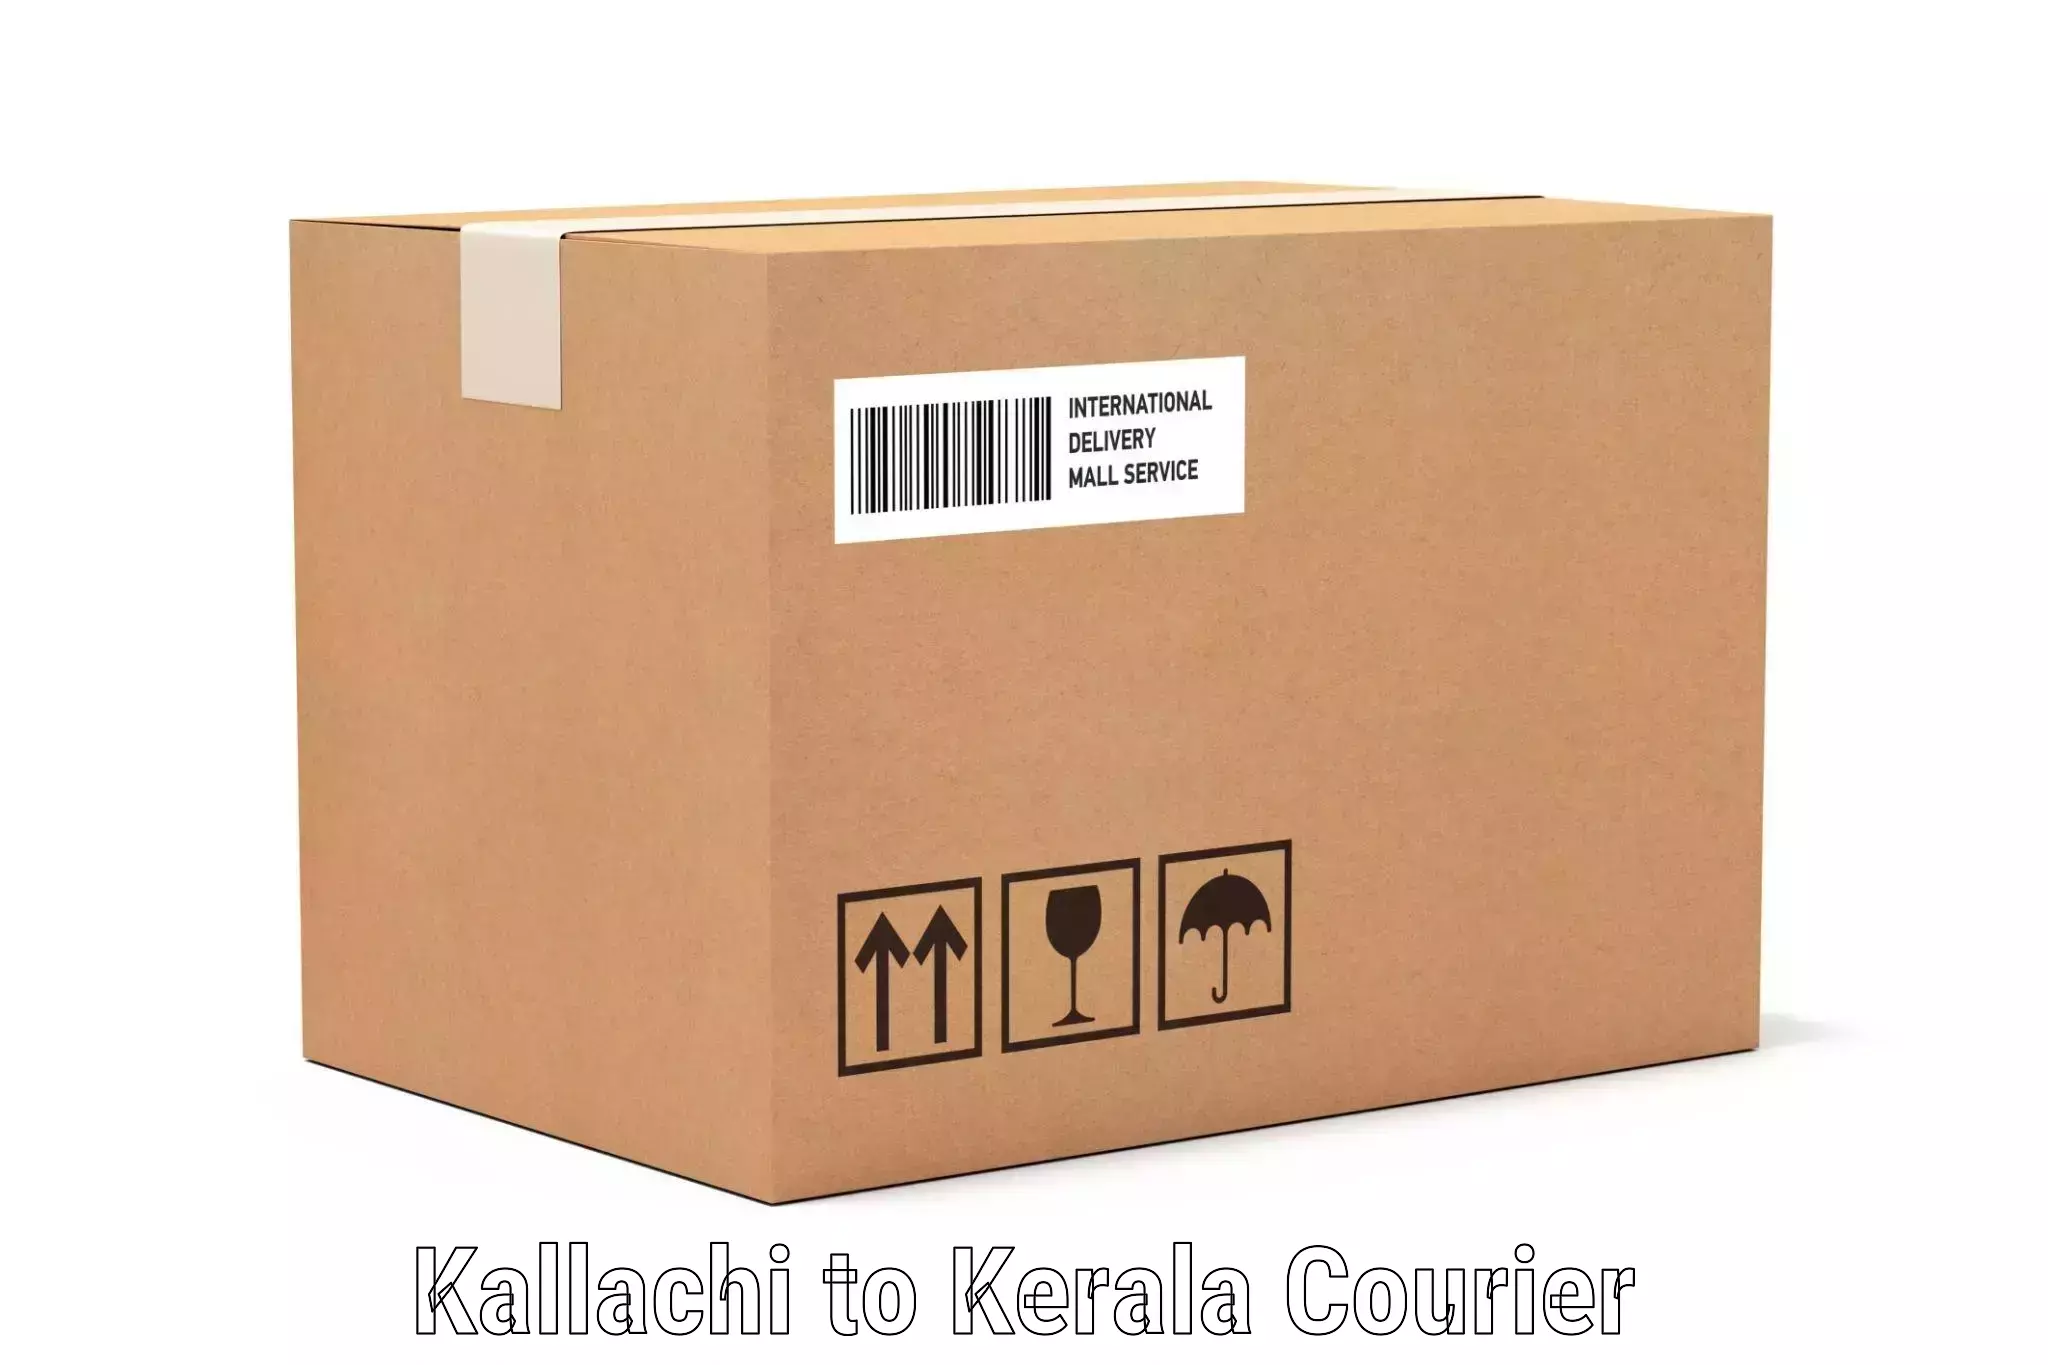 Express luggage delivery Kallachi to Kallachi